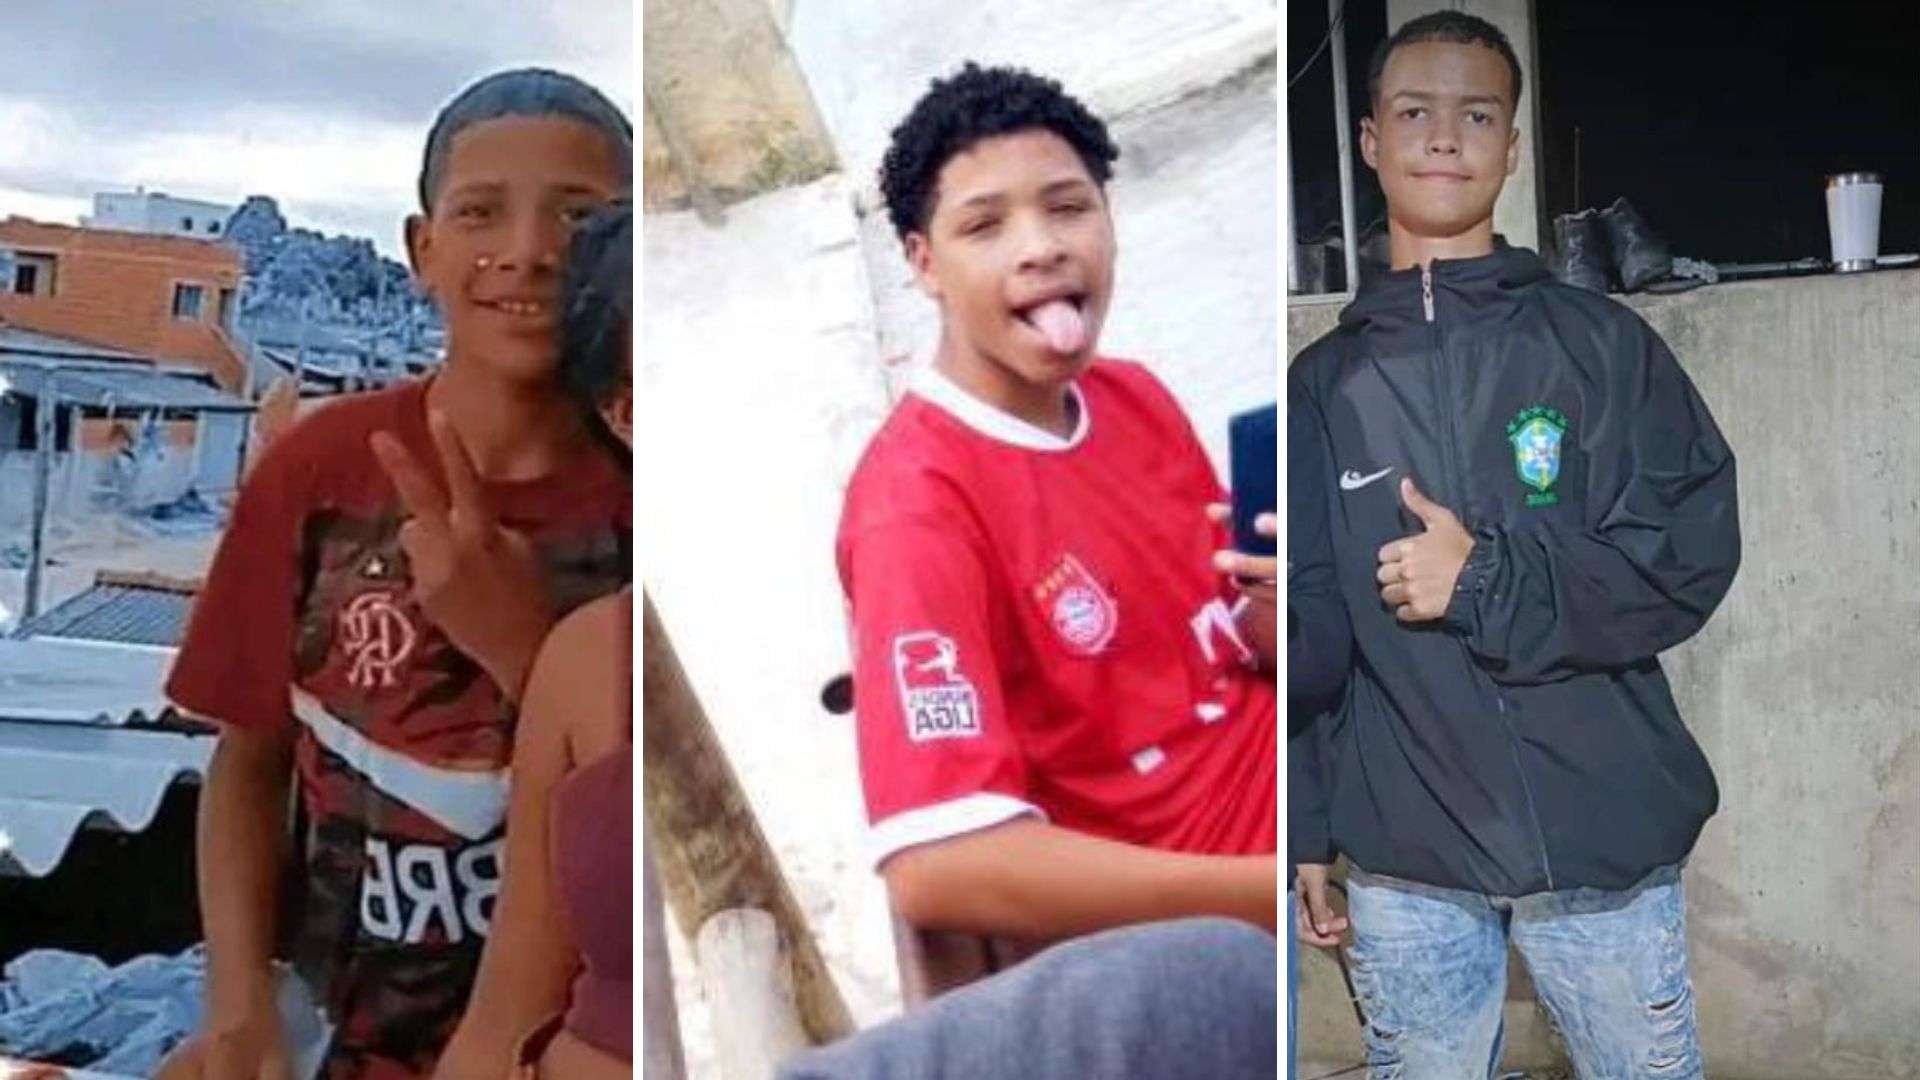 Corpos de Kauã Loureiro e Wellington Gomes foram liberados aos familiares, e o de Carlos Henrique Trajanos será liberado somente após resultado de exame de DNA; entenda